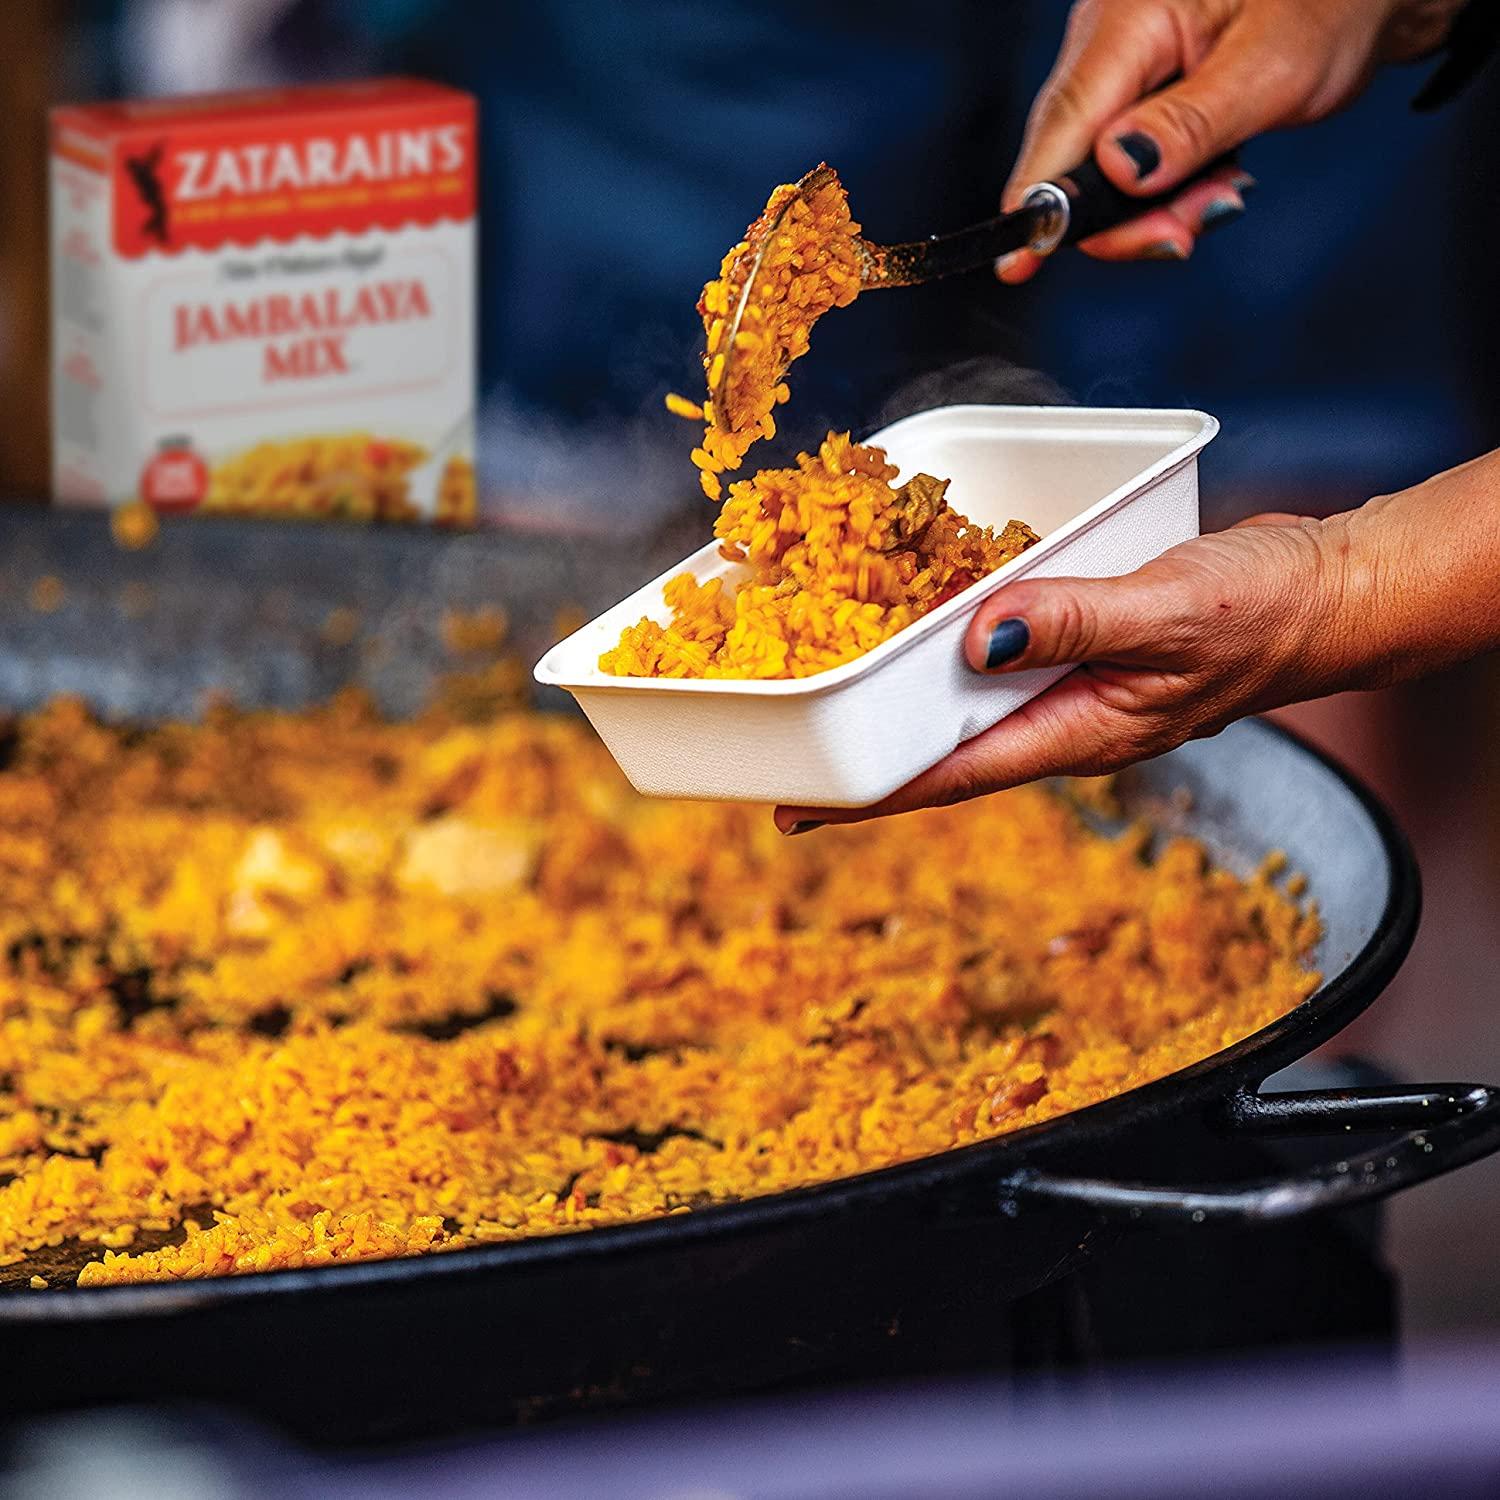 Zatarain's - Zatarain's, Side Dish - Chicken Rice Mix Side Dish